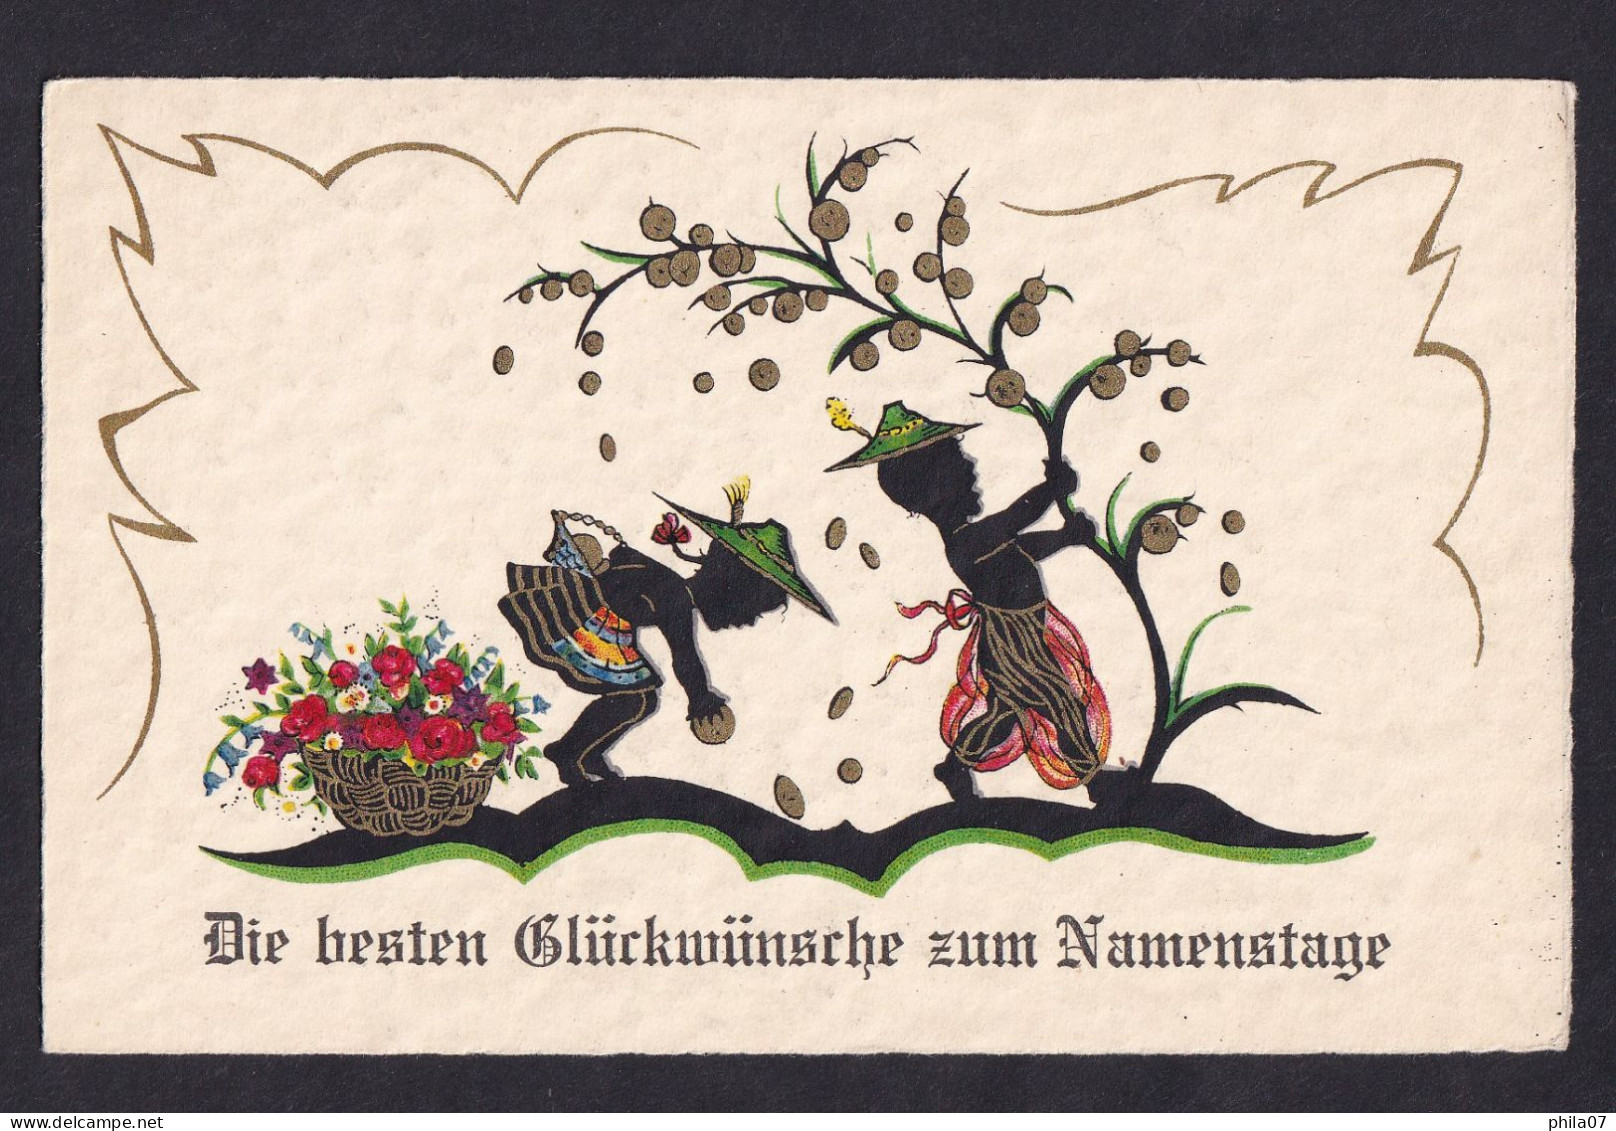 Die Besten Gluckwunsche Zum Namenstage / Postcard Not Circulated, 2 Scans - Scherenschnitt - Silhouette